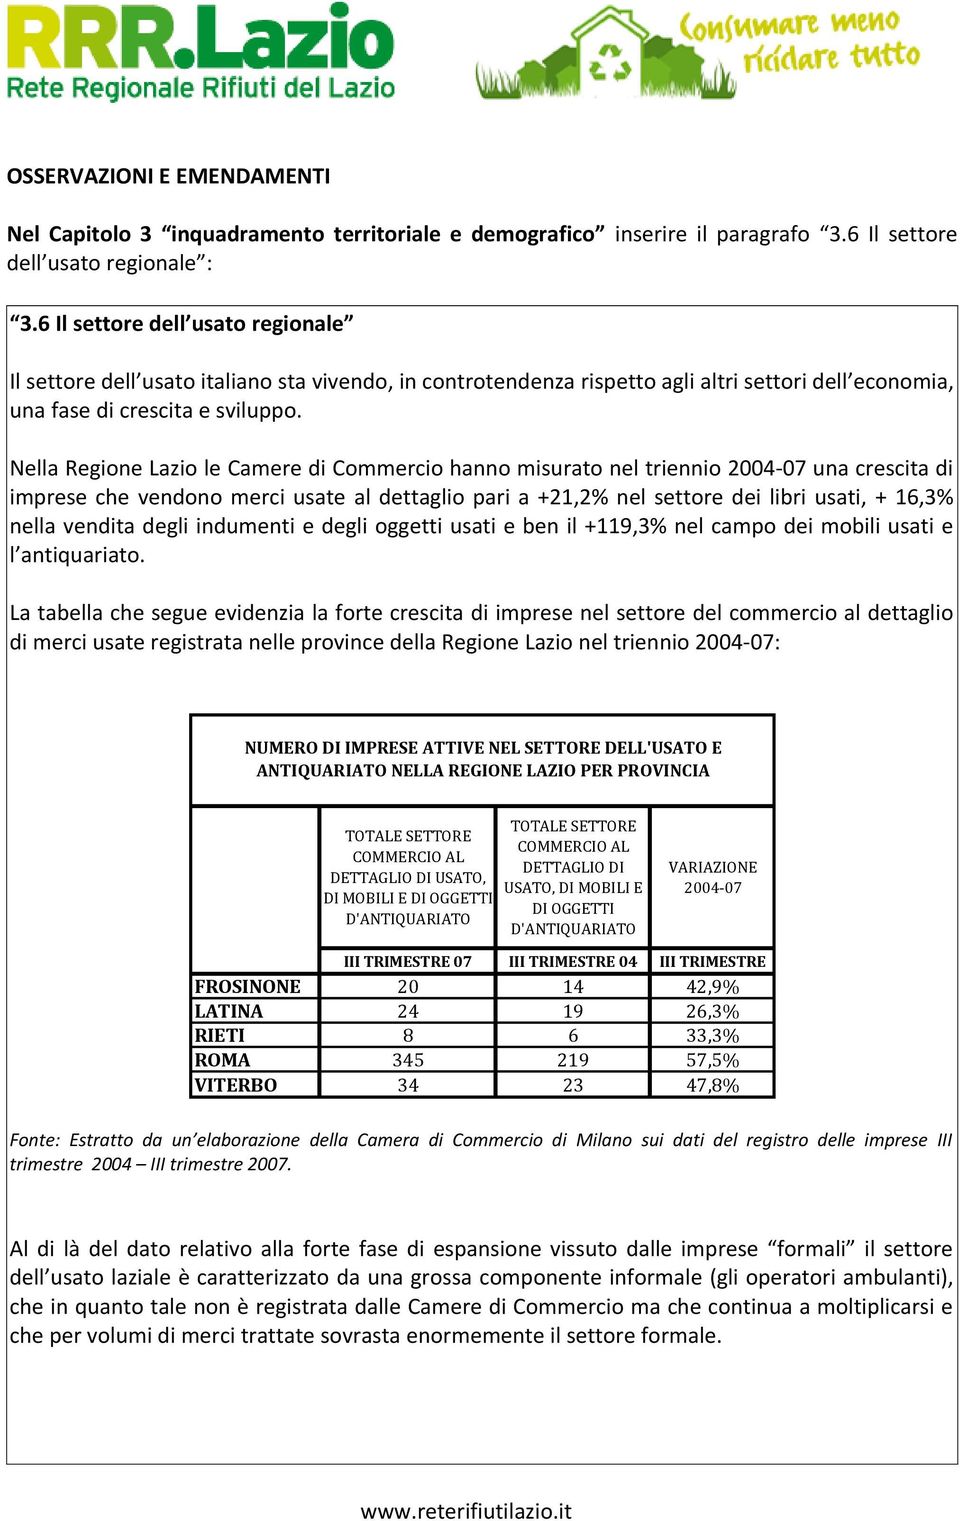 Nella Regione Lazio le Camere di Commercio hanno misurato nel triennio 2004-07 una crescita di imprese che vendono merci usate al dettaglio pari a +21,2% nel settore dei libri usati, + 16,3% nella